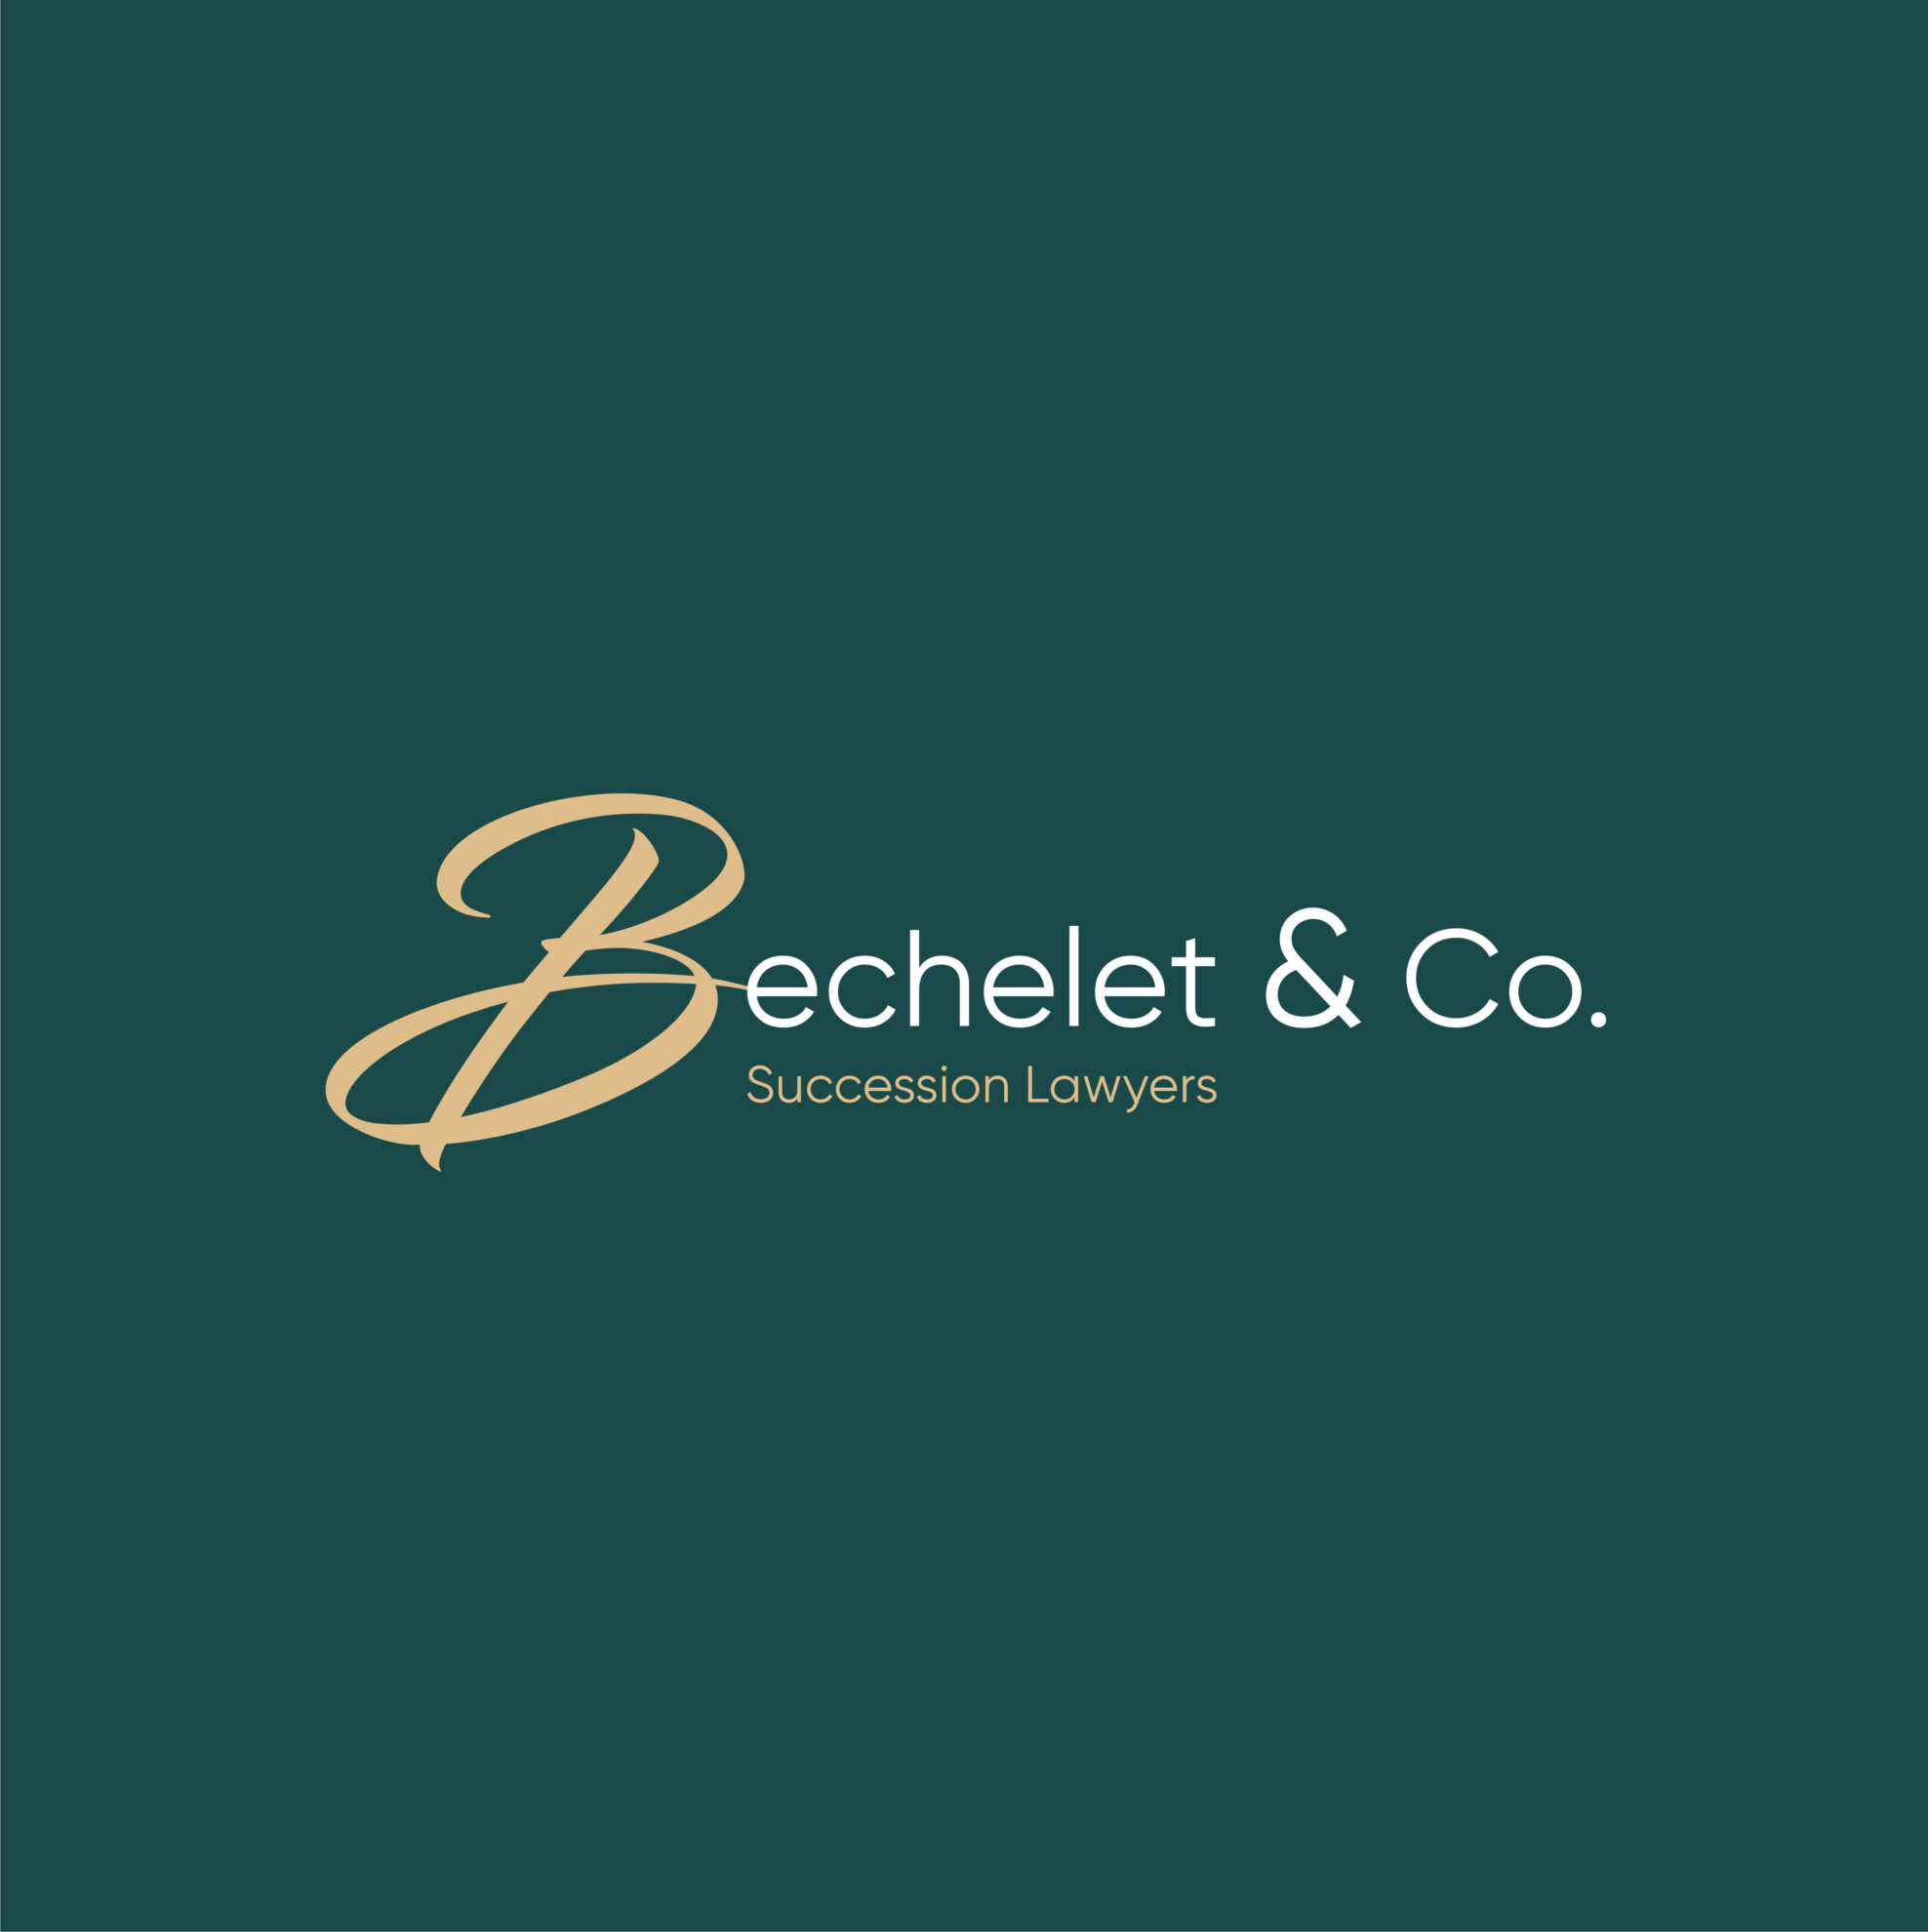 Bechelet & Co Branding-01